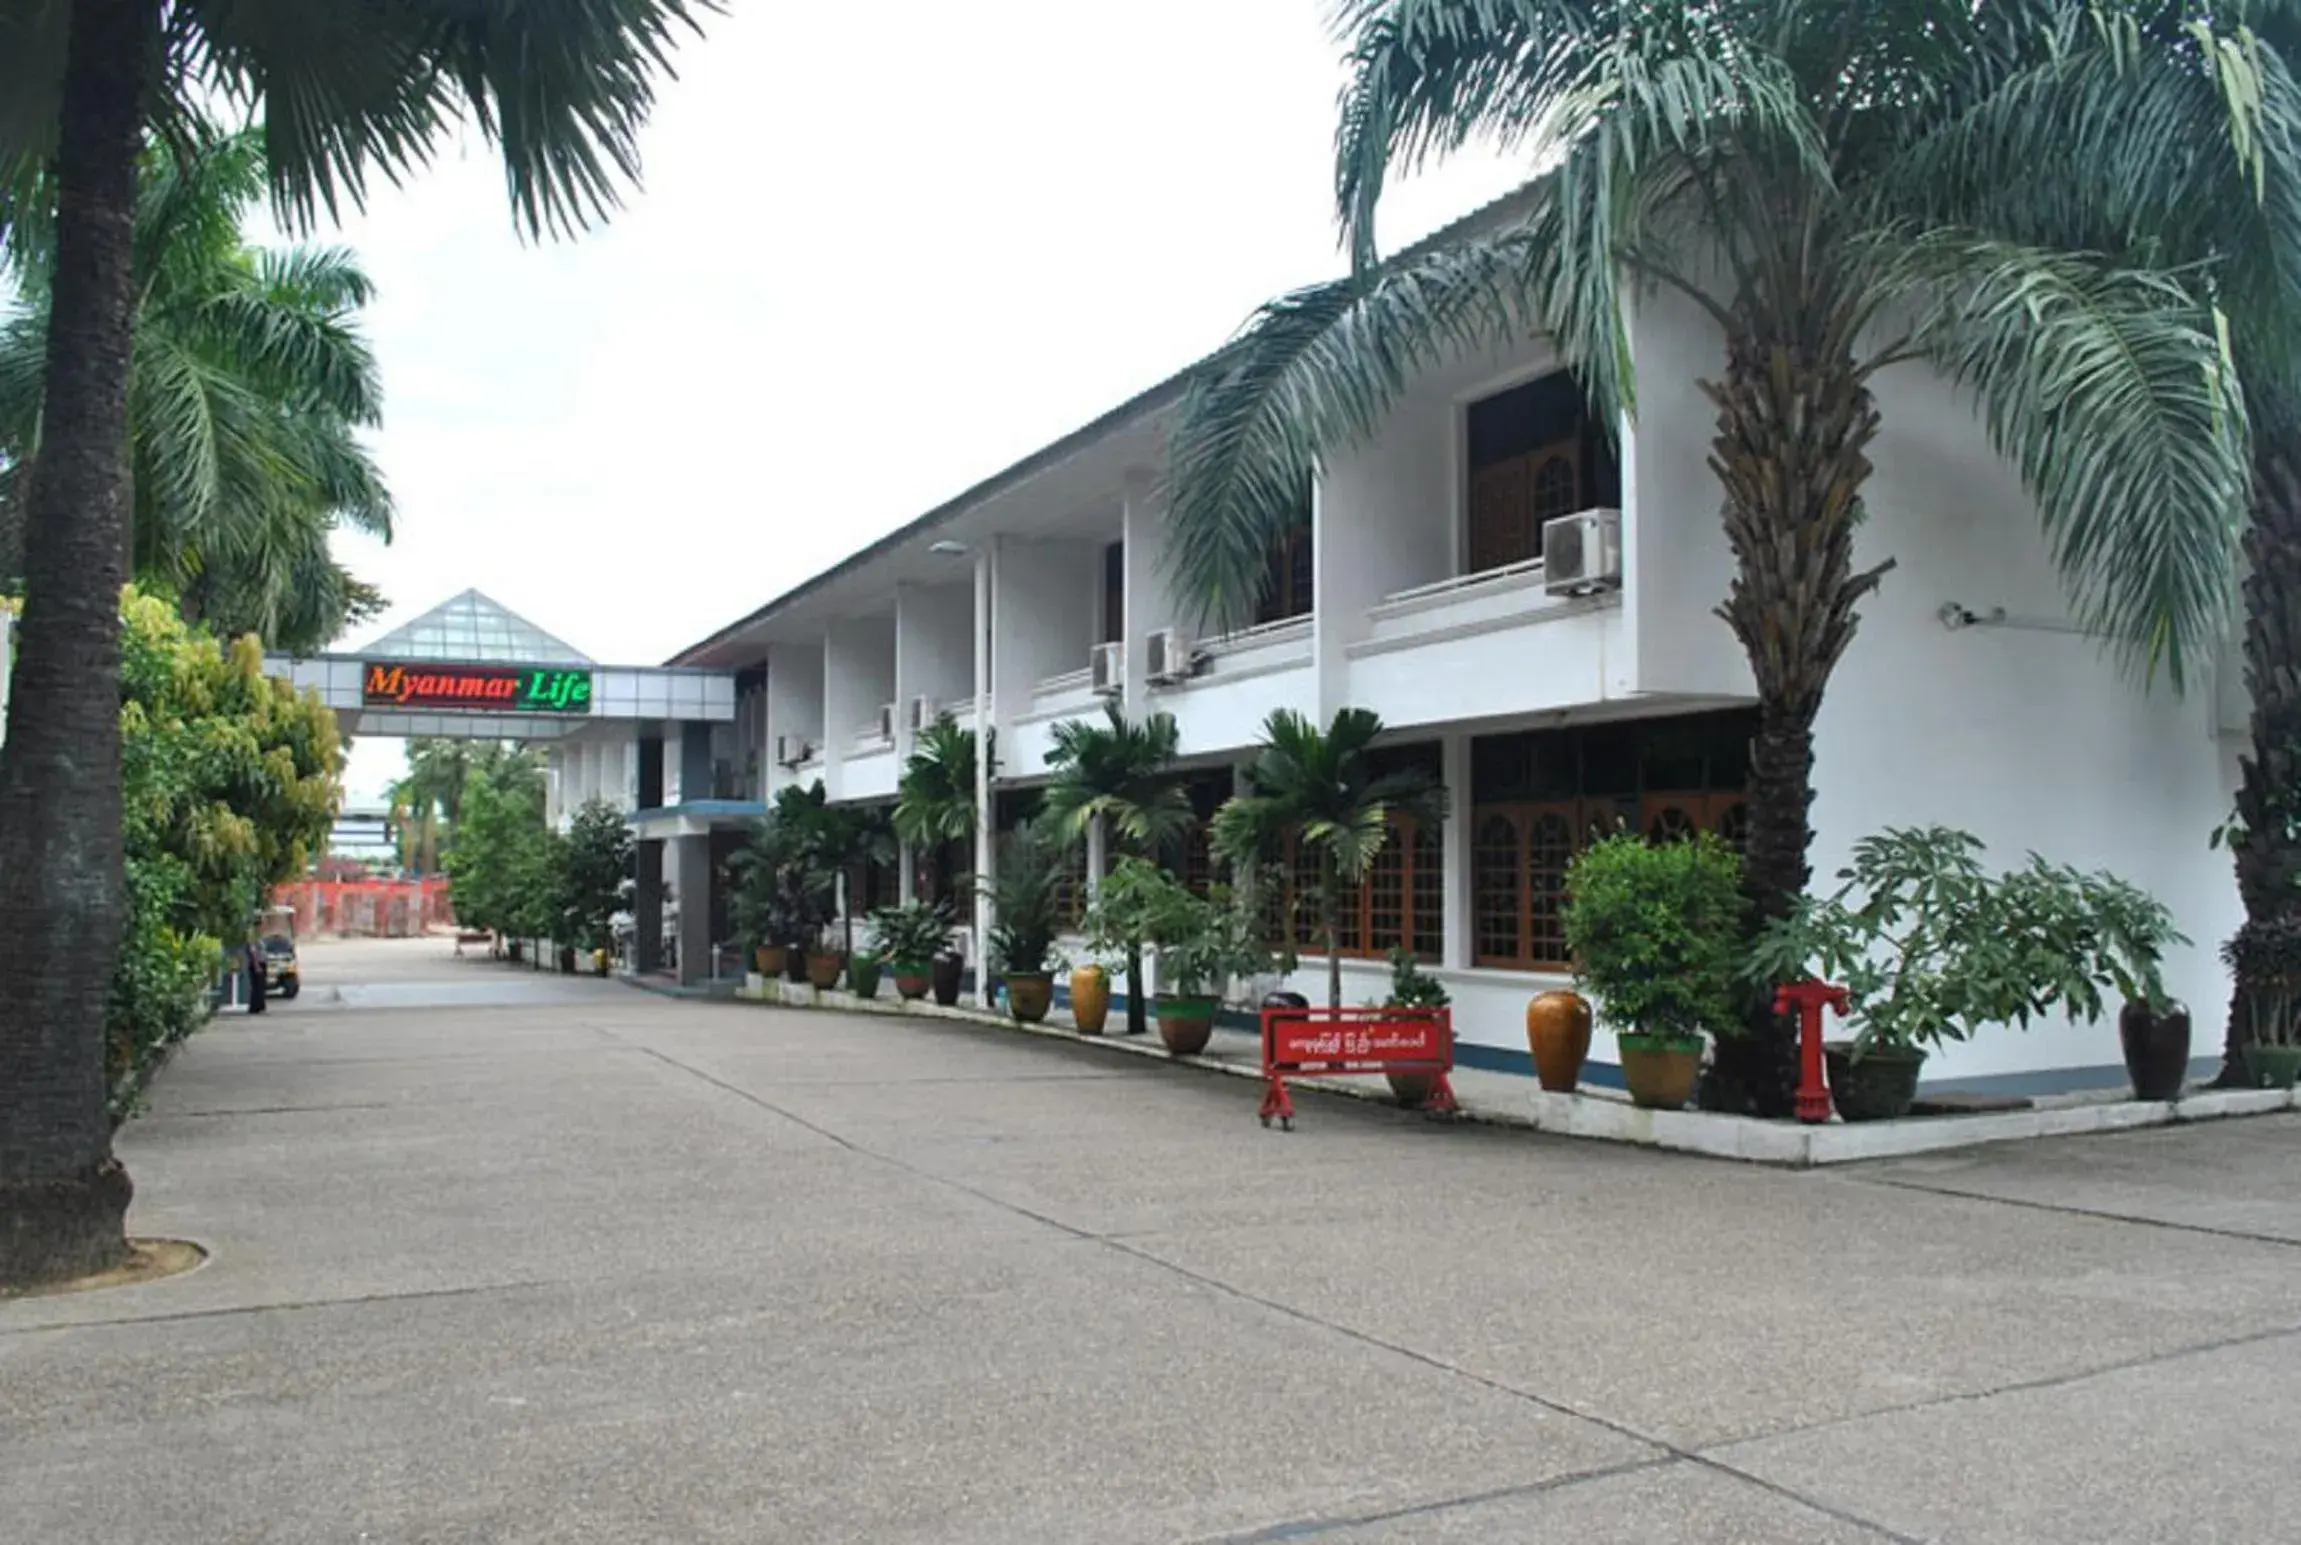 Property building, Facade/Entrance in Myanmar Life Hotel